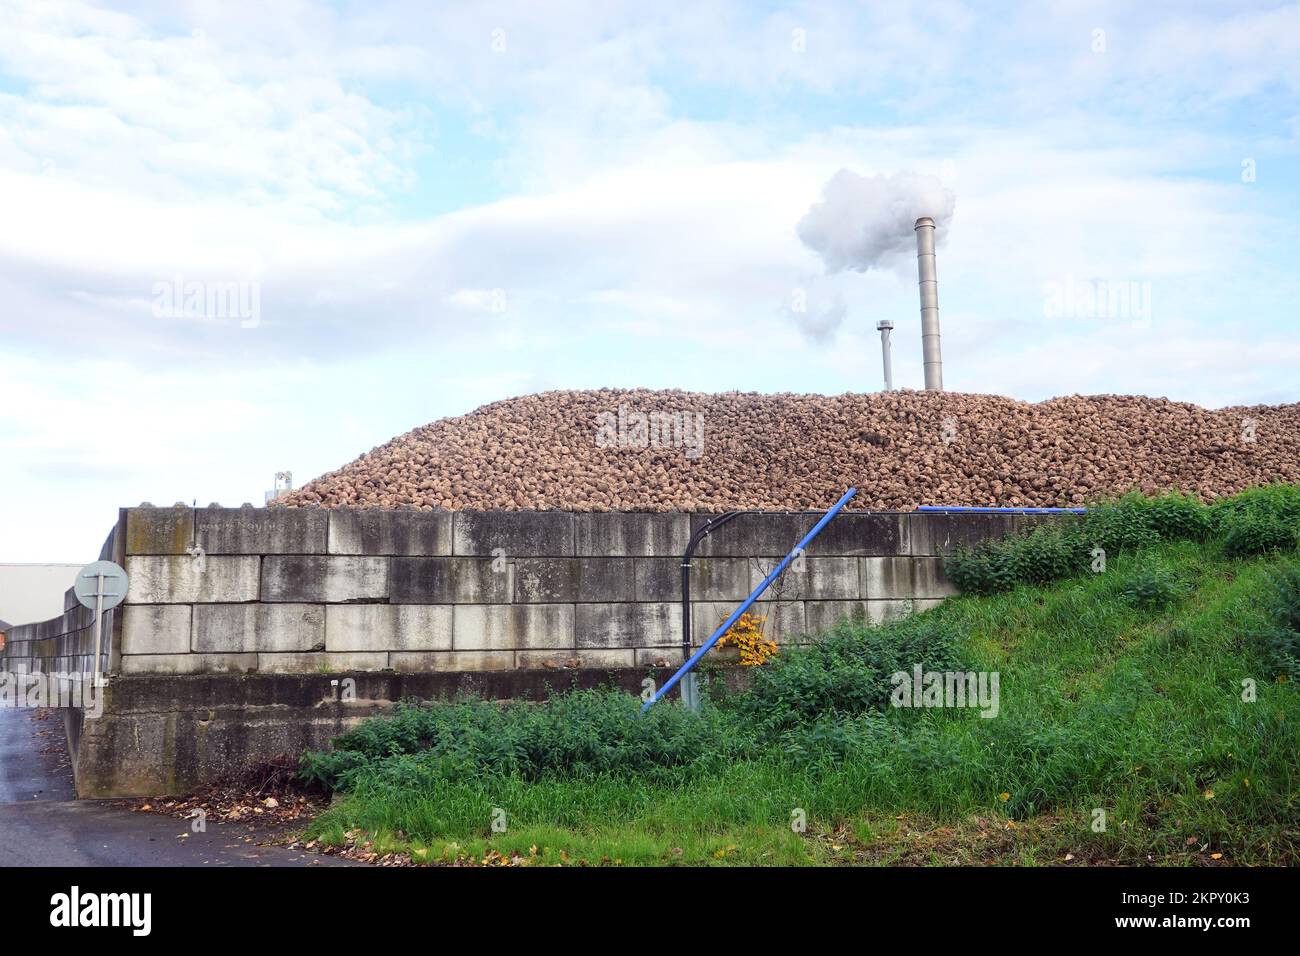 Berg aus Zuckerrüben in der Zuckerfabrik, Nordrhein-Westfalen, Deutschland, Euskirchen Stock Photo